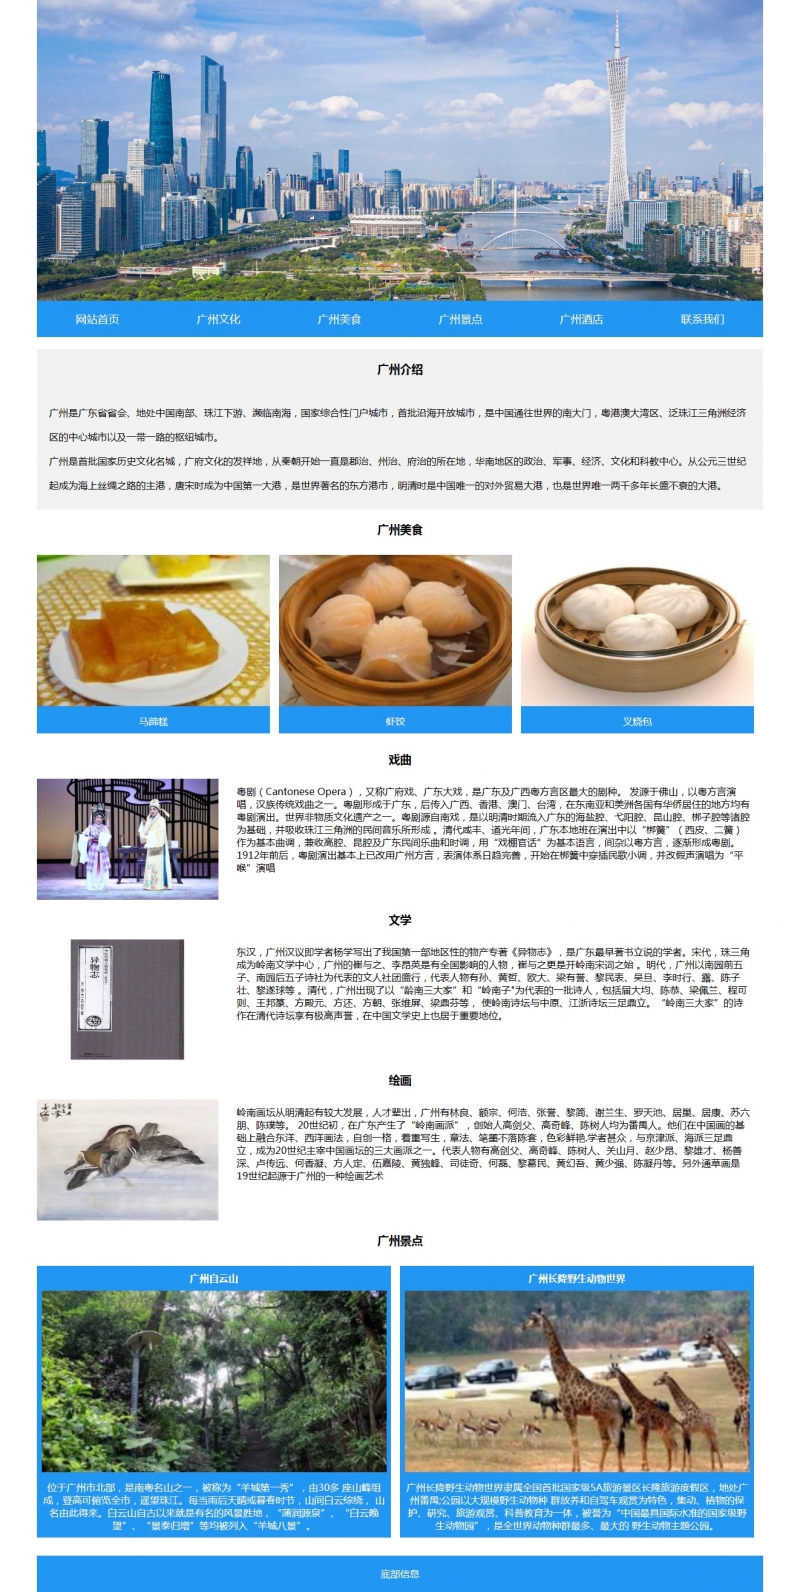 广州旅游文化6网页html+css图集表单 精选下载